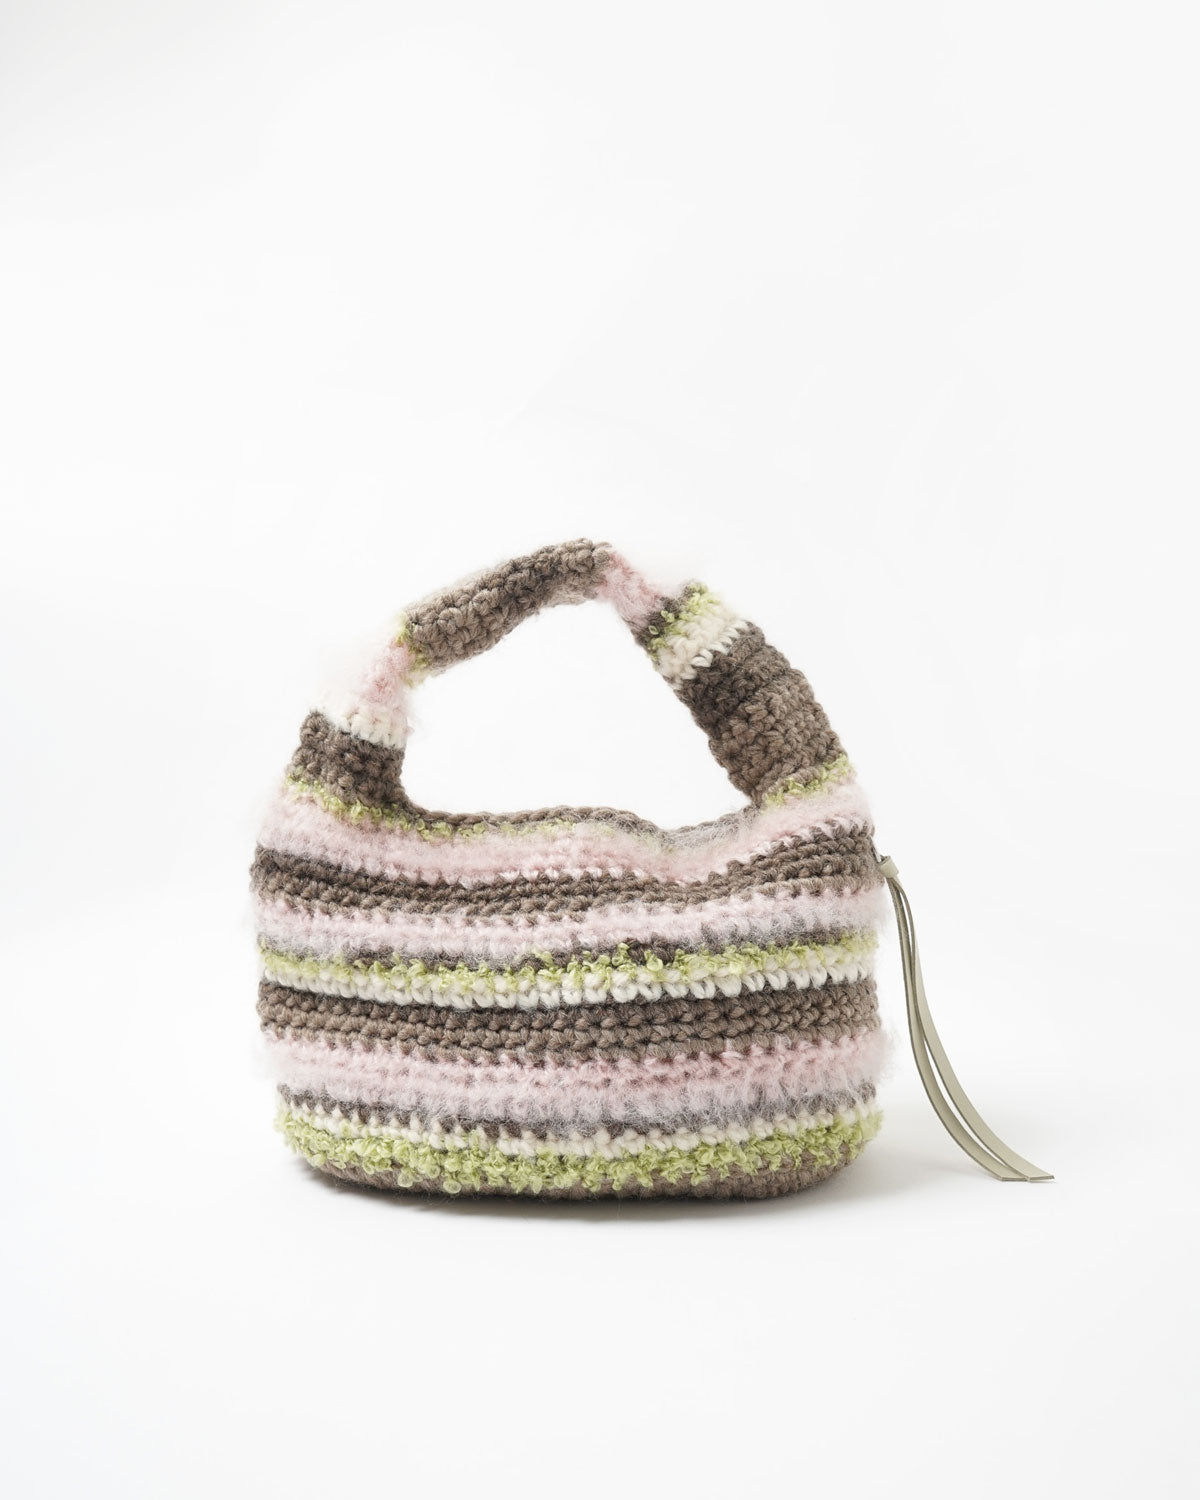 Hand Knitting Crochet Hand Bag 01